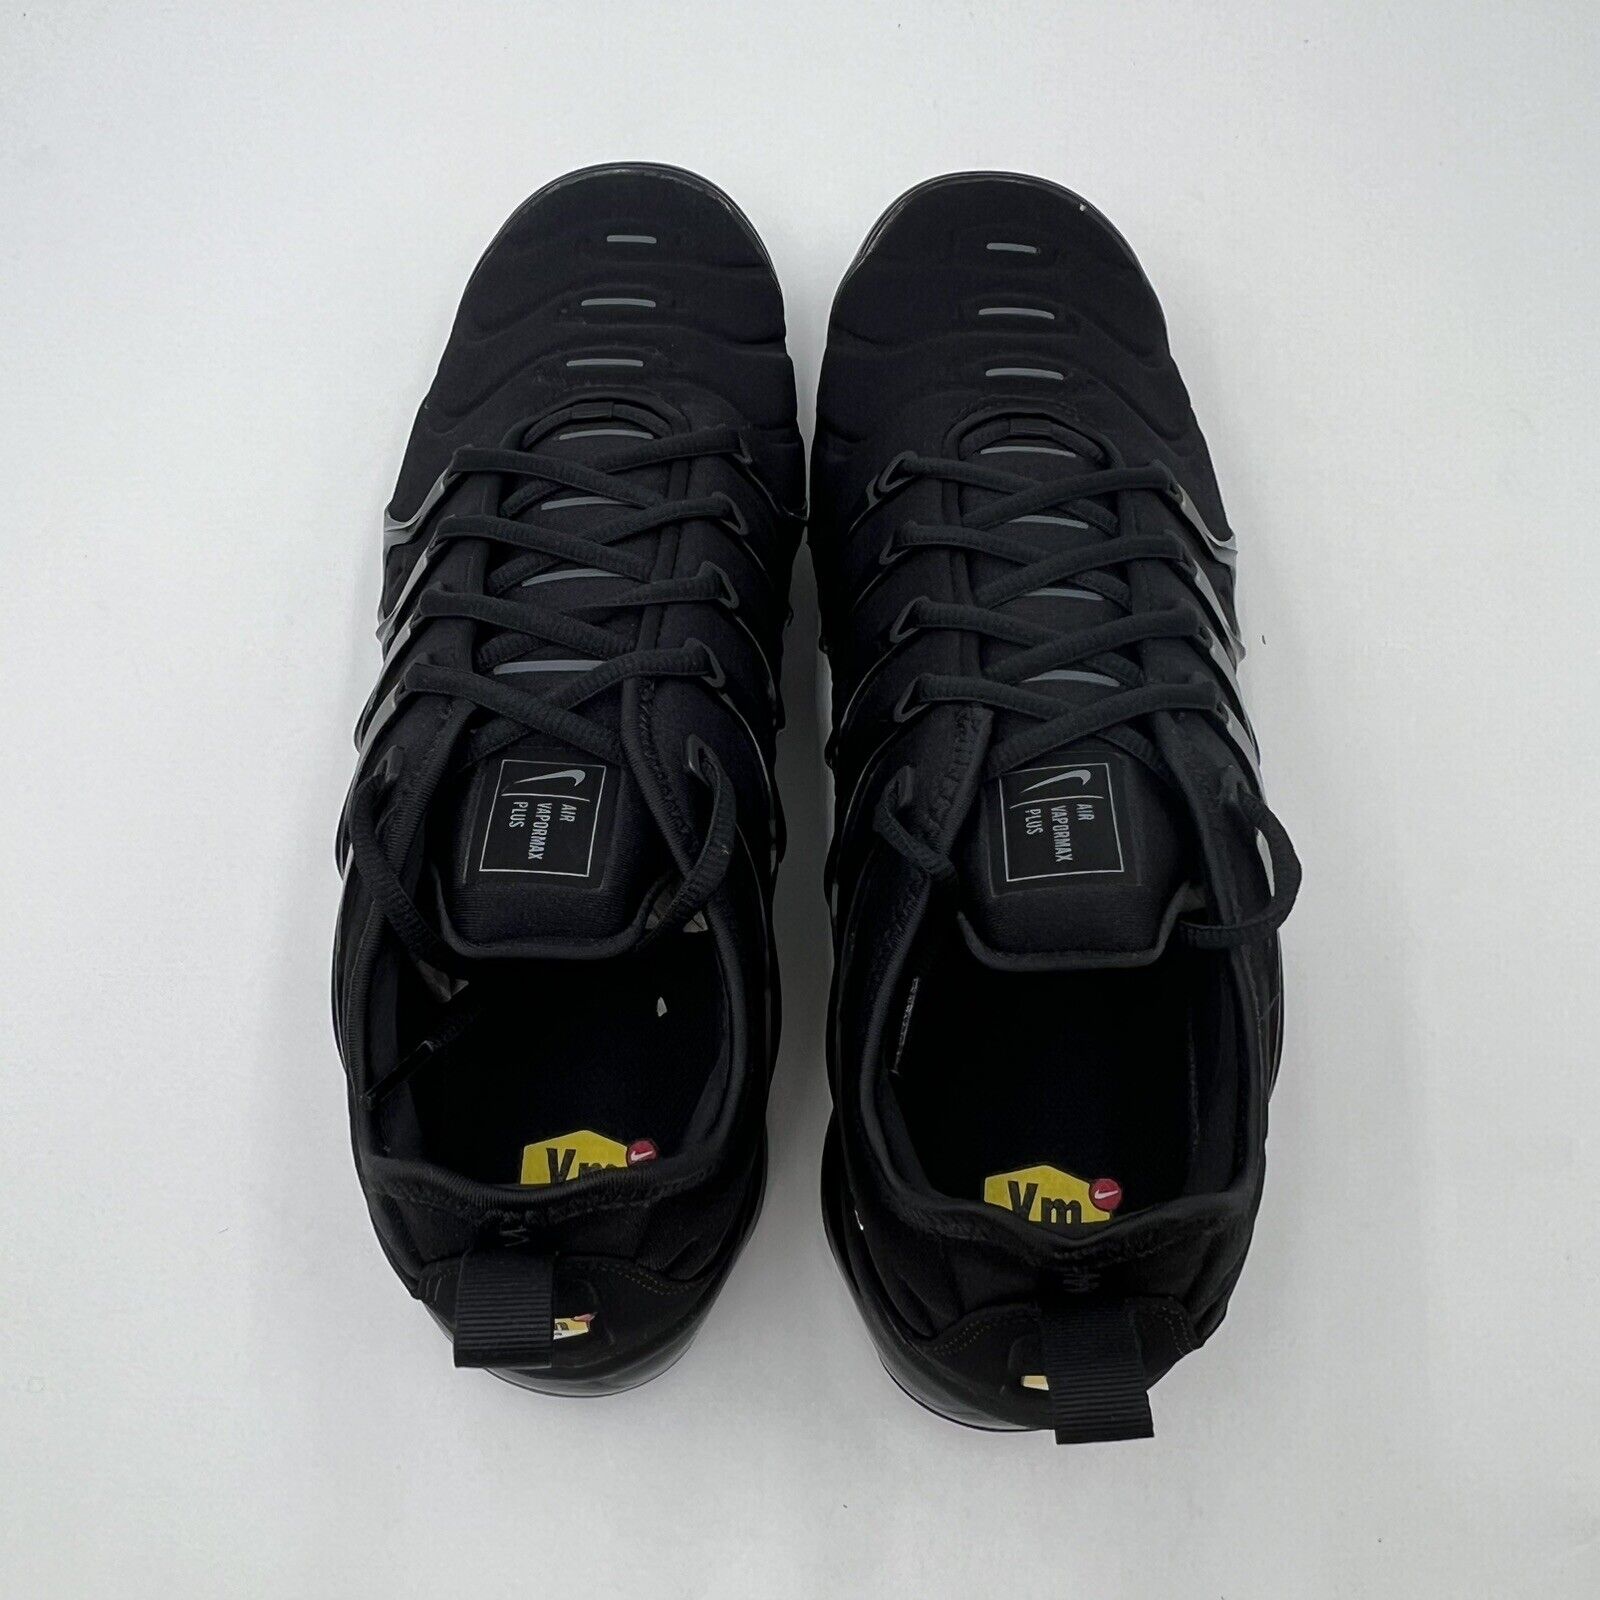 Nike Men's Sz 13 Air Vapormax Plus Black Dark Grey Athletic Sneakers 924453 004